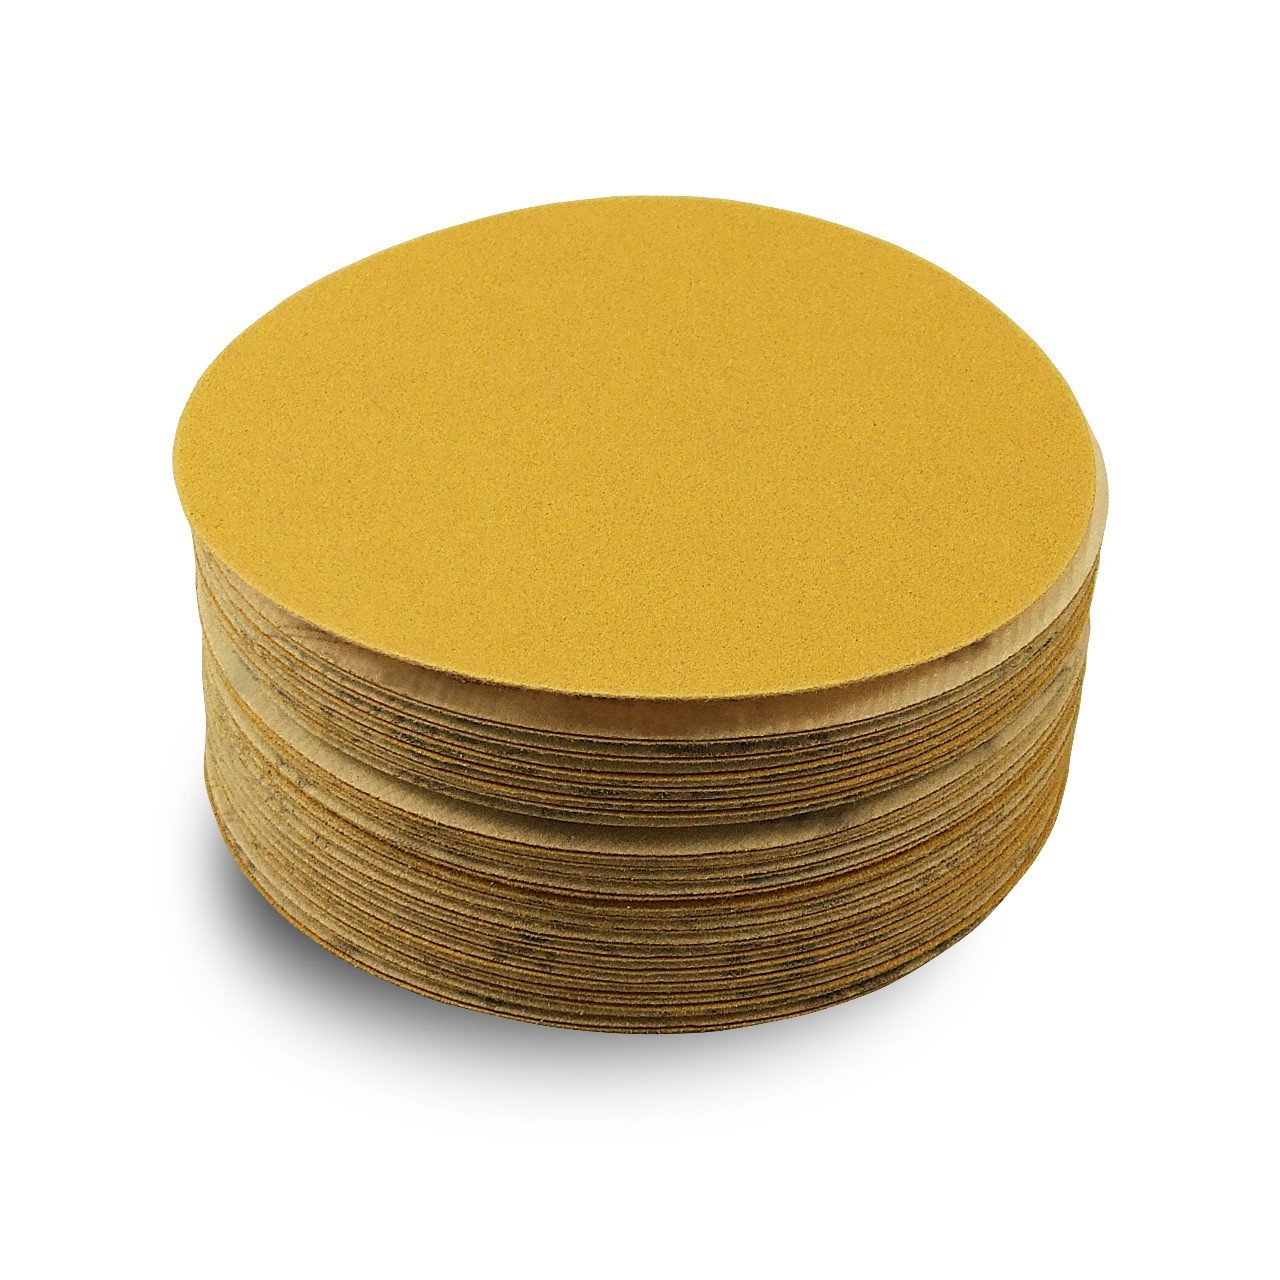 https://www.redlabelabrasives.com/cdn/shop/products/5-inch-hook-and-loop-gold-sanding-discs-50-pack-168536_1600x.jpg?v=1629134013